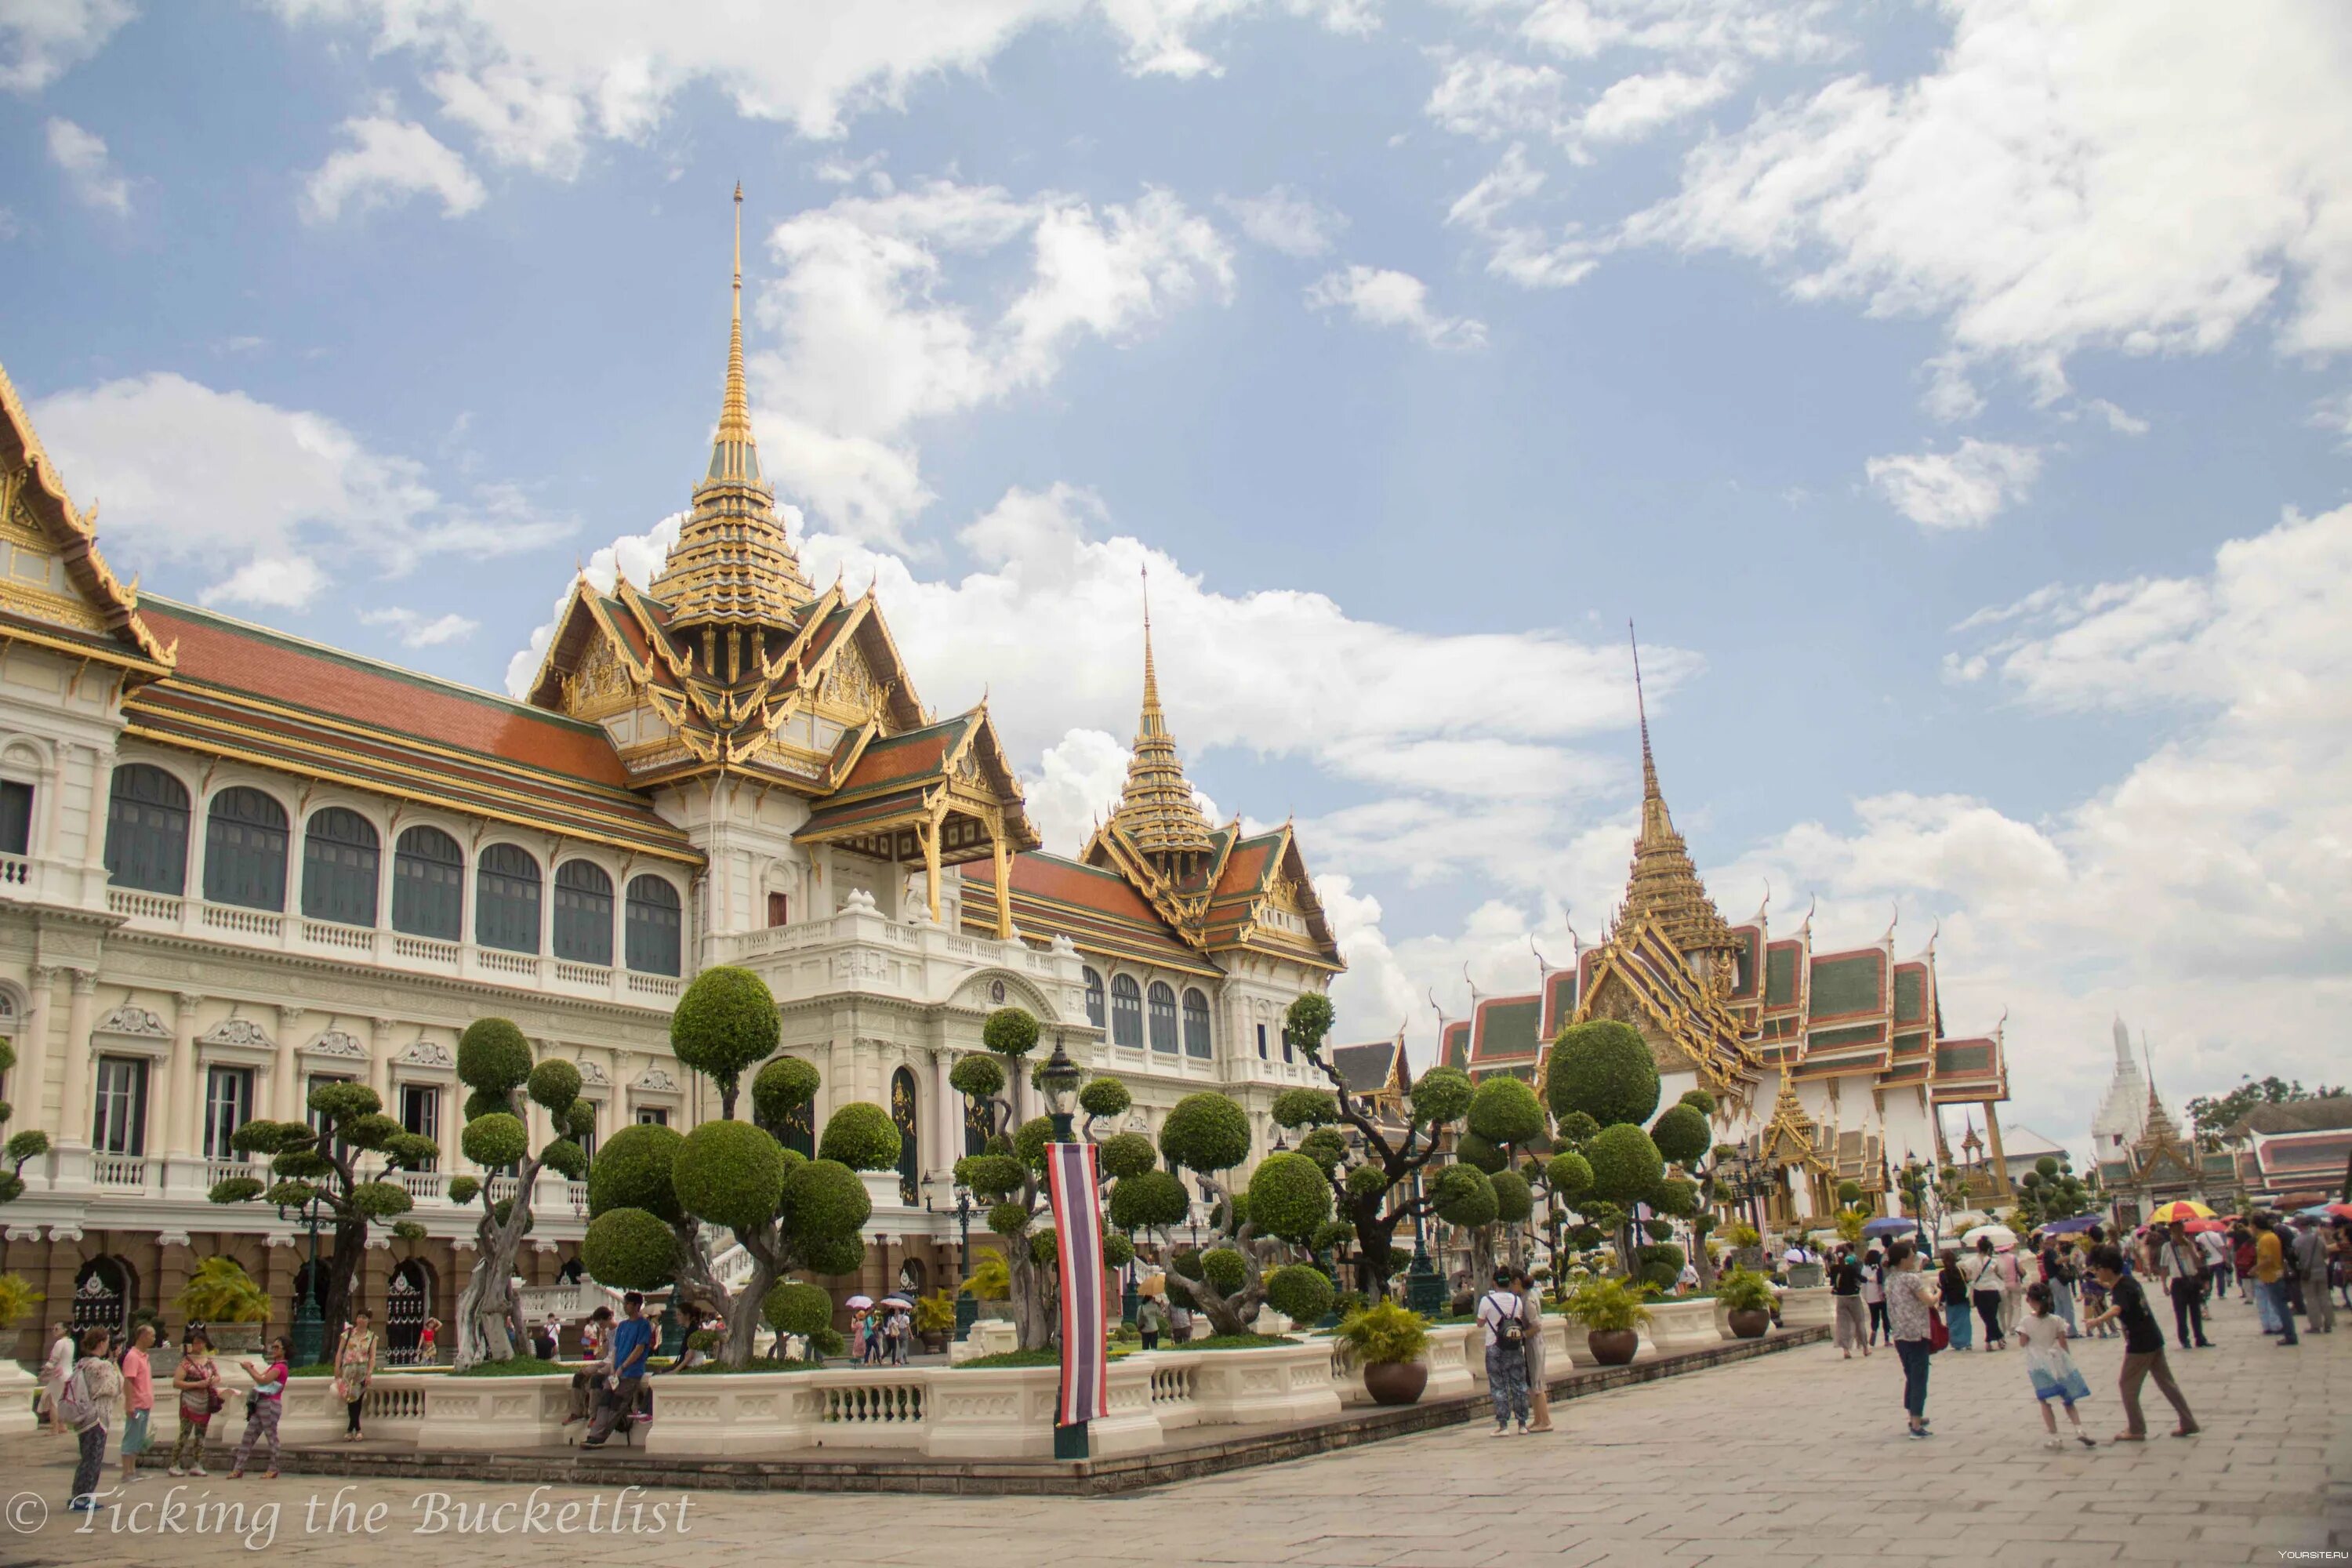 Чем знаменит бангкок. Королевский дворец в Бангкоке. Столица Тайланда. Бангкок столица Таиланда. Королевский дворец — резиденция тайского короля Бангкок.